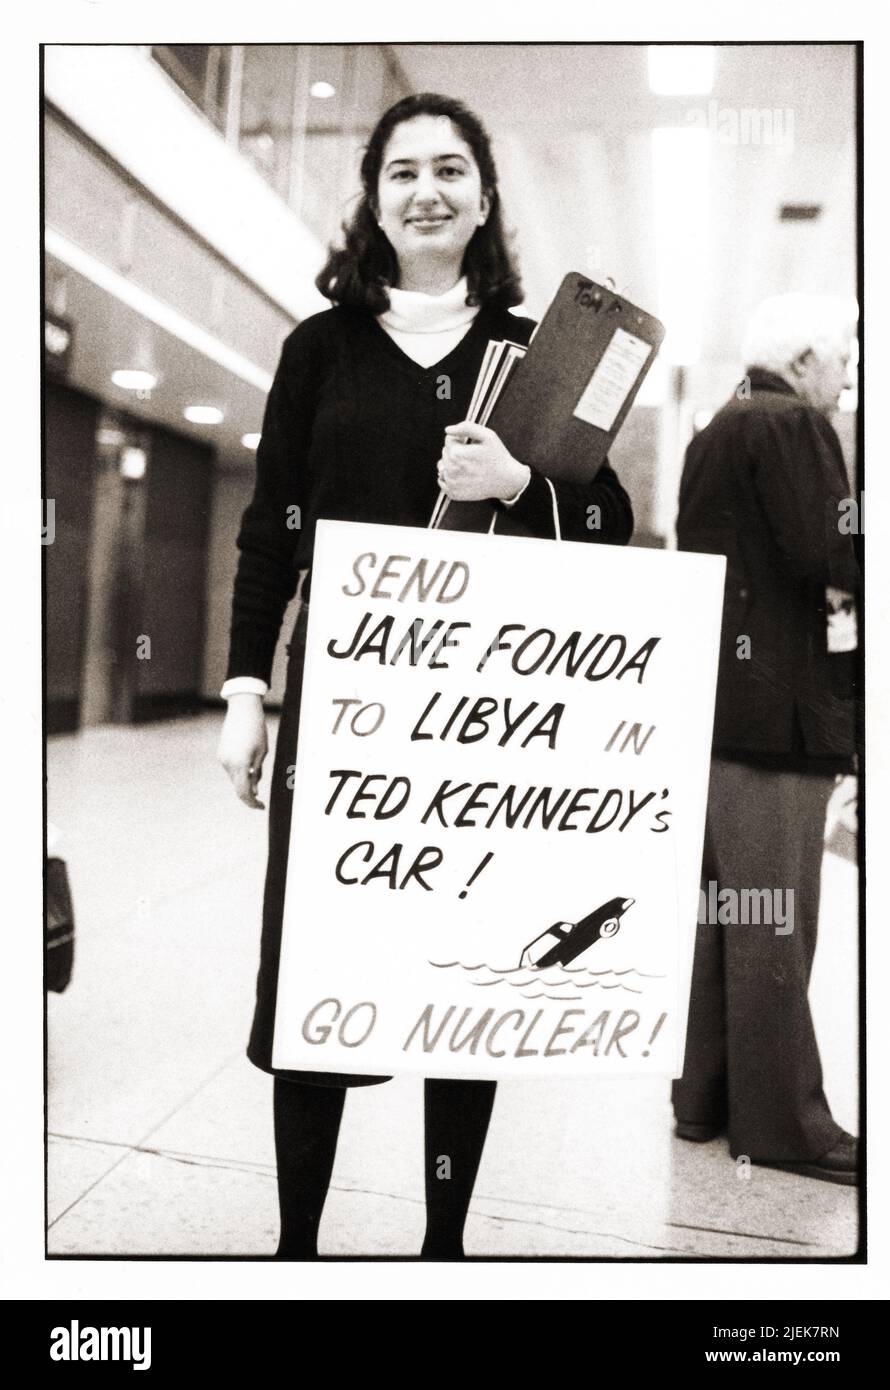 Eine pro-nukleare Protesterin auf dem LaGuardia Airport in Queens mit einem Schild, das Jane Fonda und Teddy Kennedy auf die Spur gebracht hat. In Queens, New York um 1978. Stockfoto